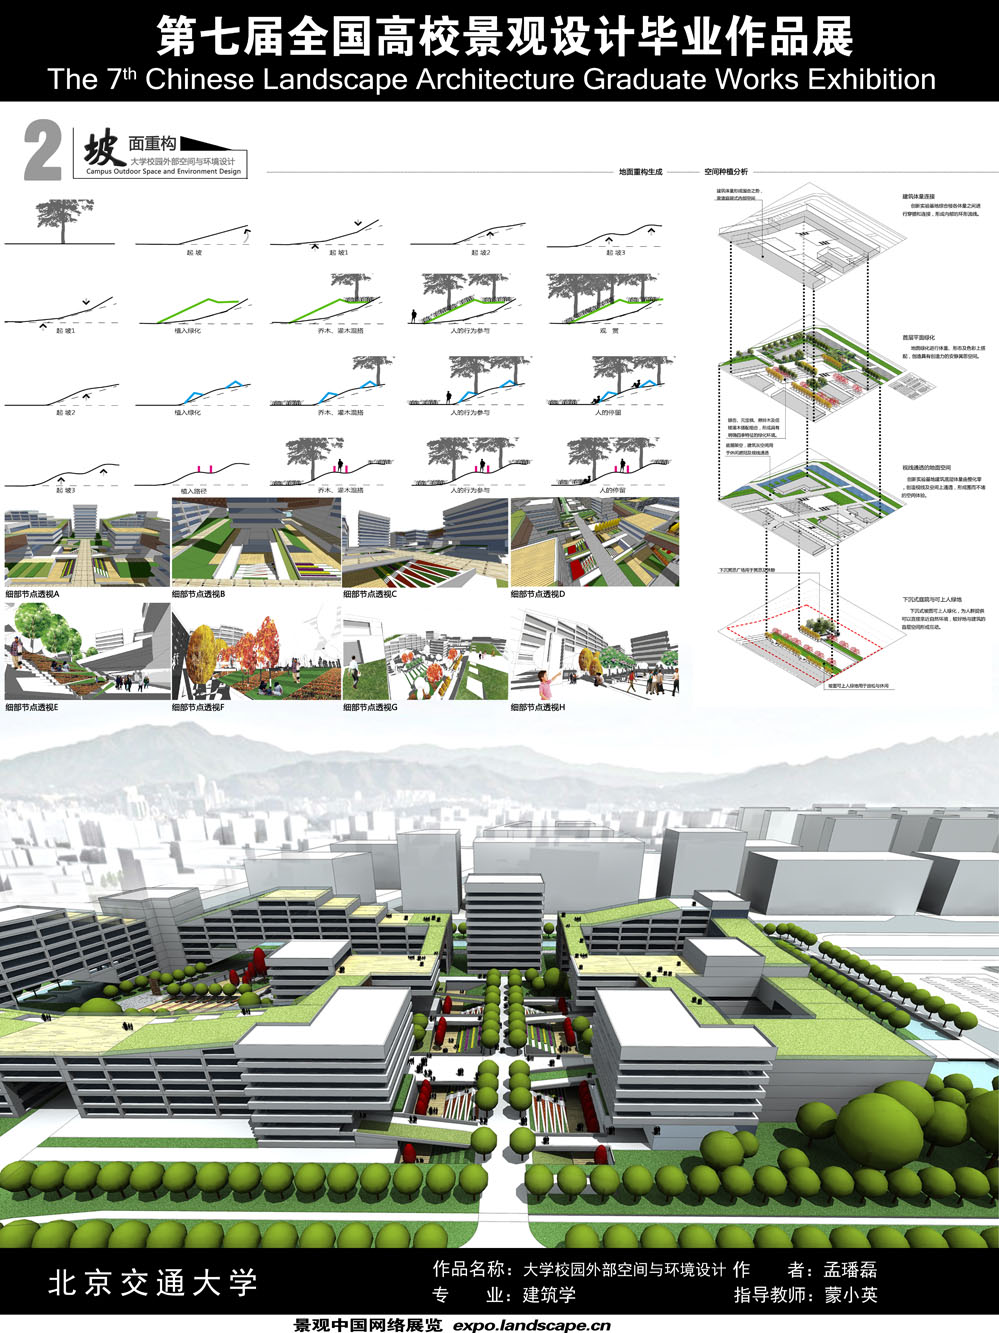 坡面重构-大学校园外部空间与环境设计-2